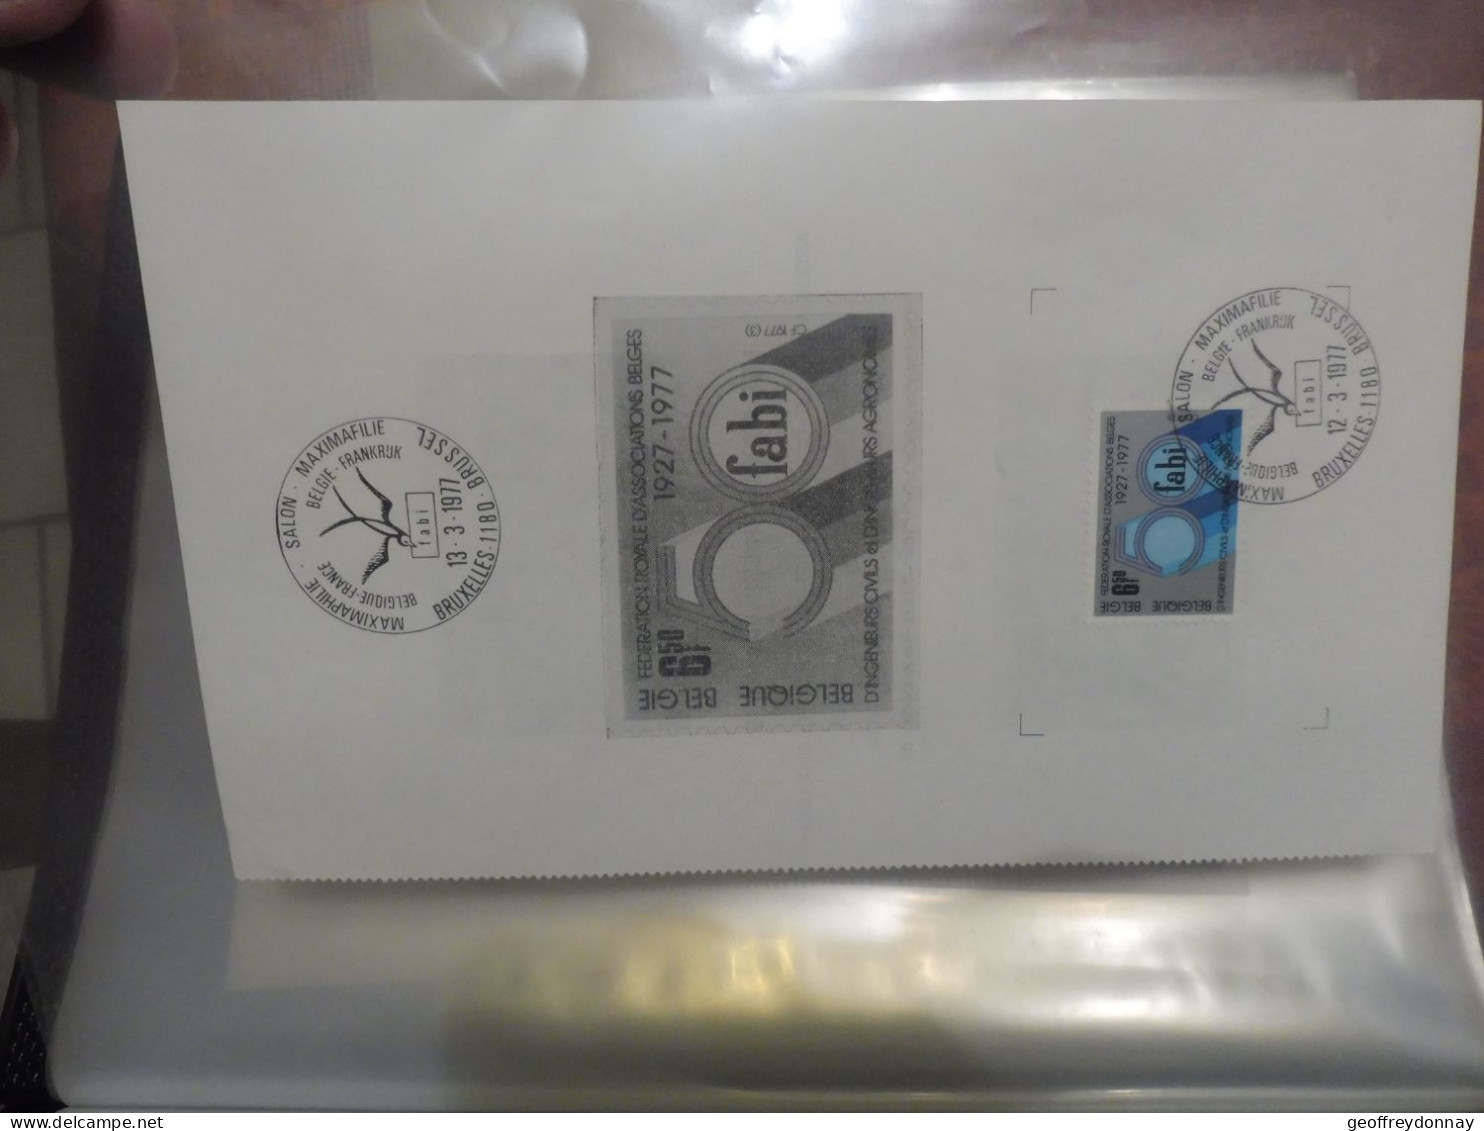 Belgique Belgie  Souvenir 1842 Ingenieur Agronome  Gestempelt Bruxelles / Oblitéré 1977  Parfait Etat - Post Office Leaflets